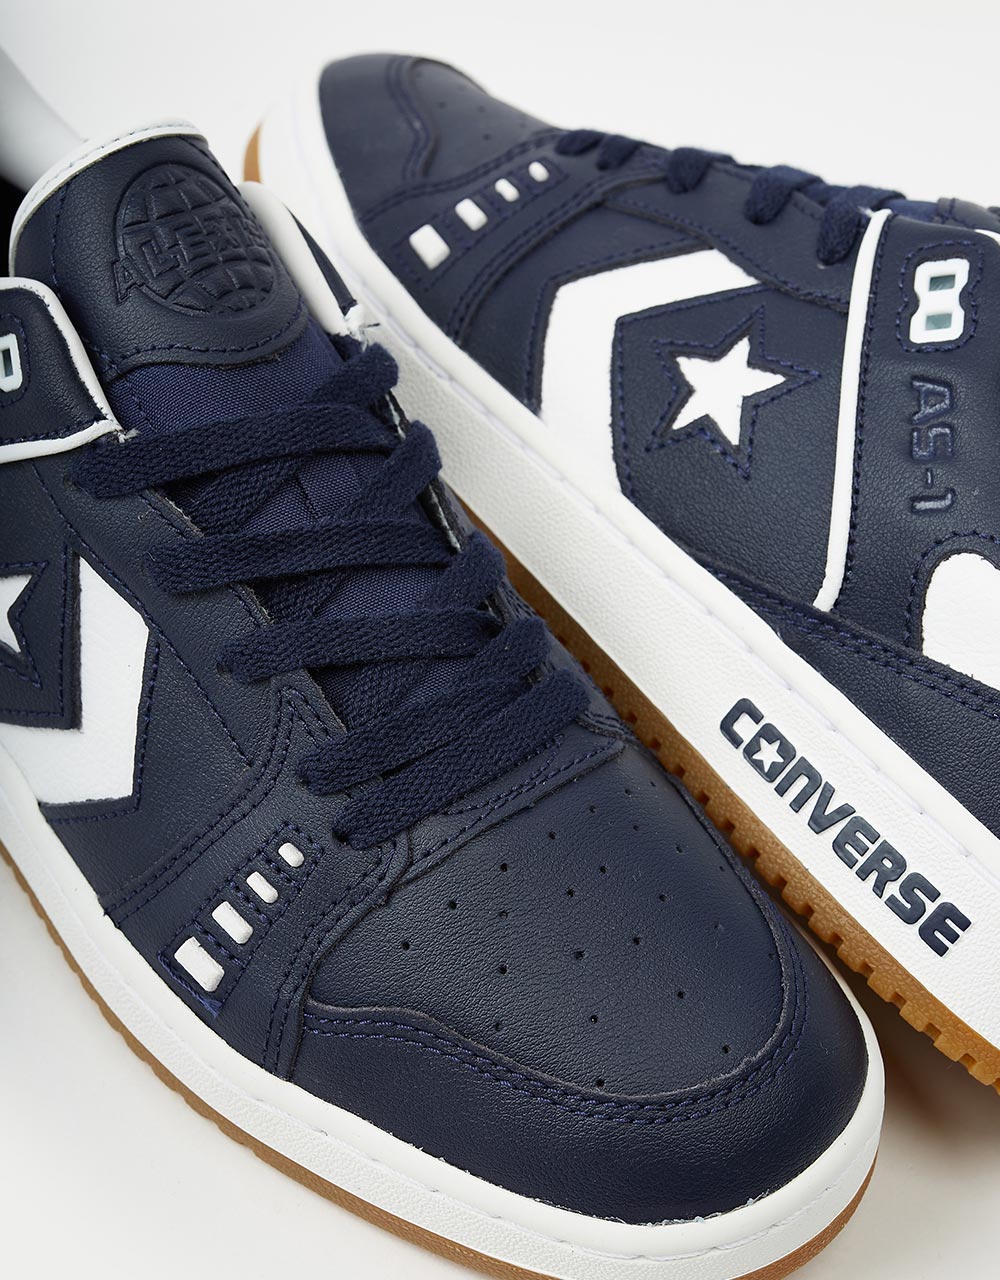 Converse AS-1 Skate Shoes - Obsidian/White/Gum